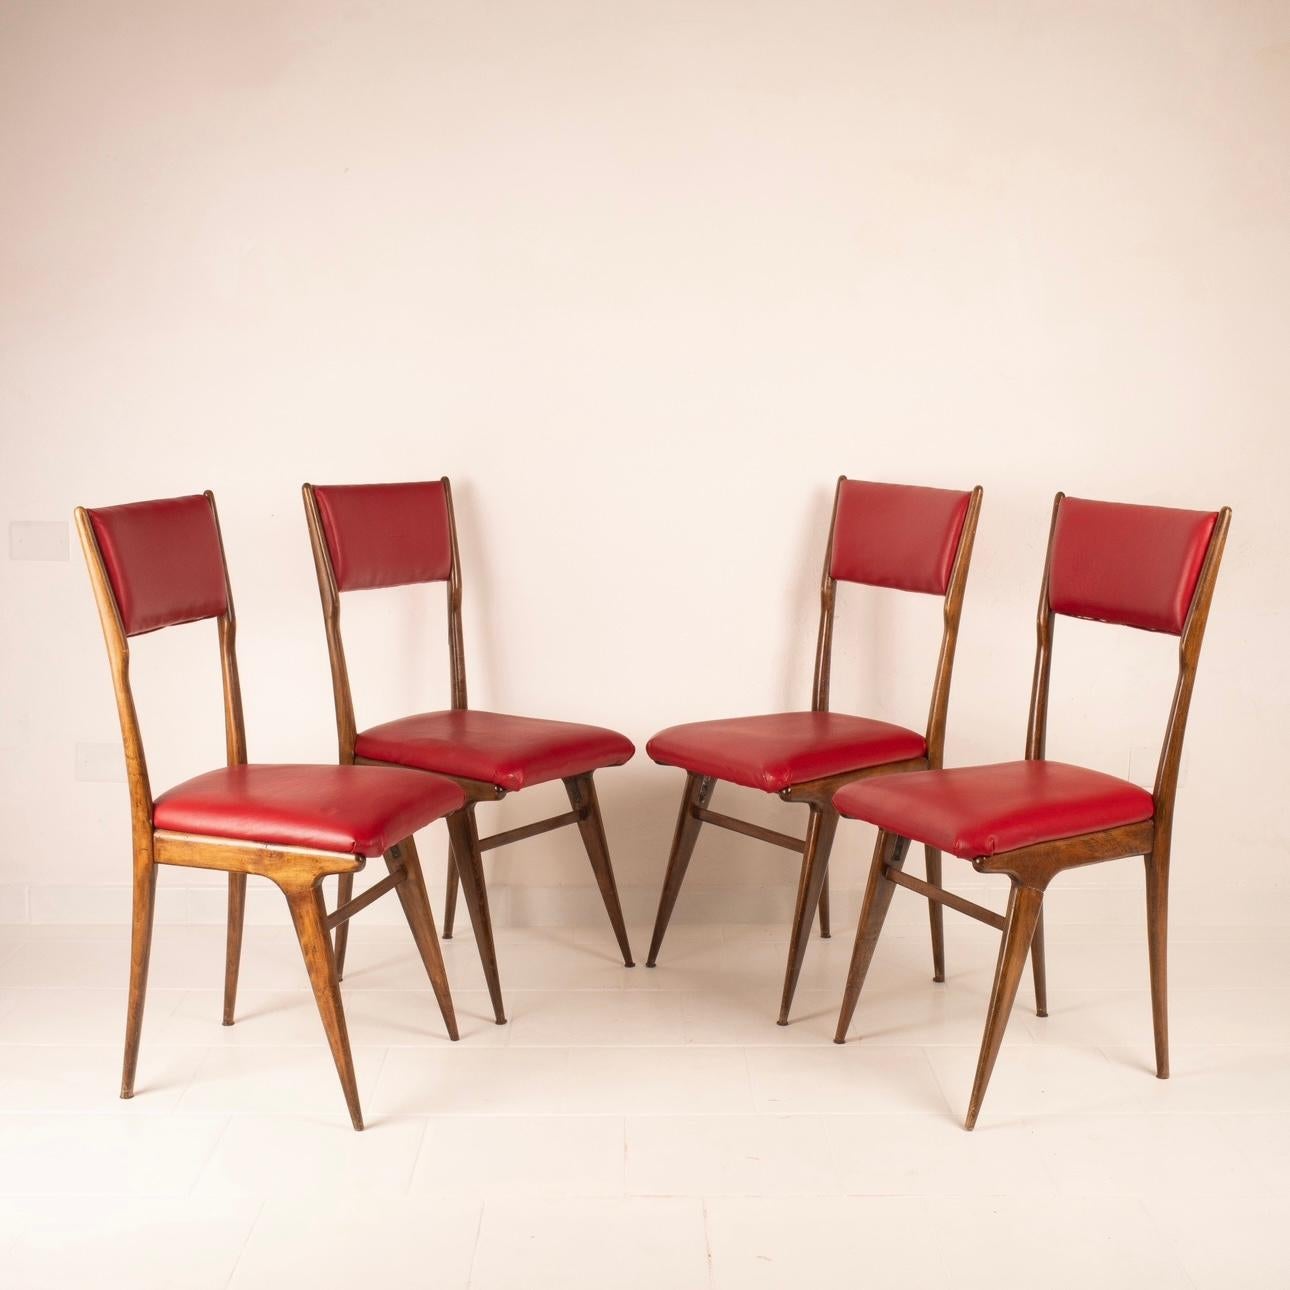 Scopri questo straordinario set di 4 sedie vintage, una creazione del rinomato designer Carlo de Carli e prodotte da Cassina negli anni '50. Queste sedie, testimonianza dell'epoca d'oro del design, sono in condizioni eccellenti, conservando il